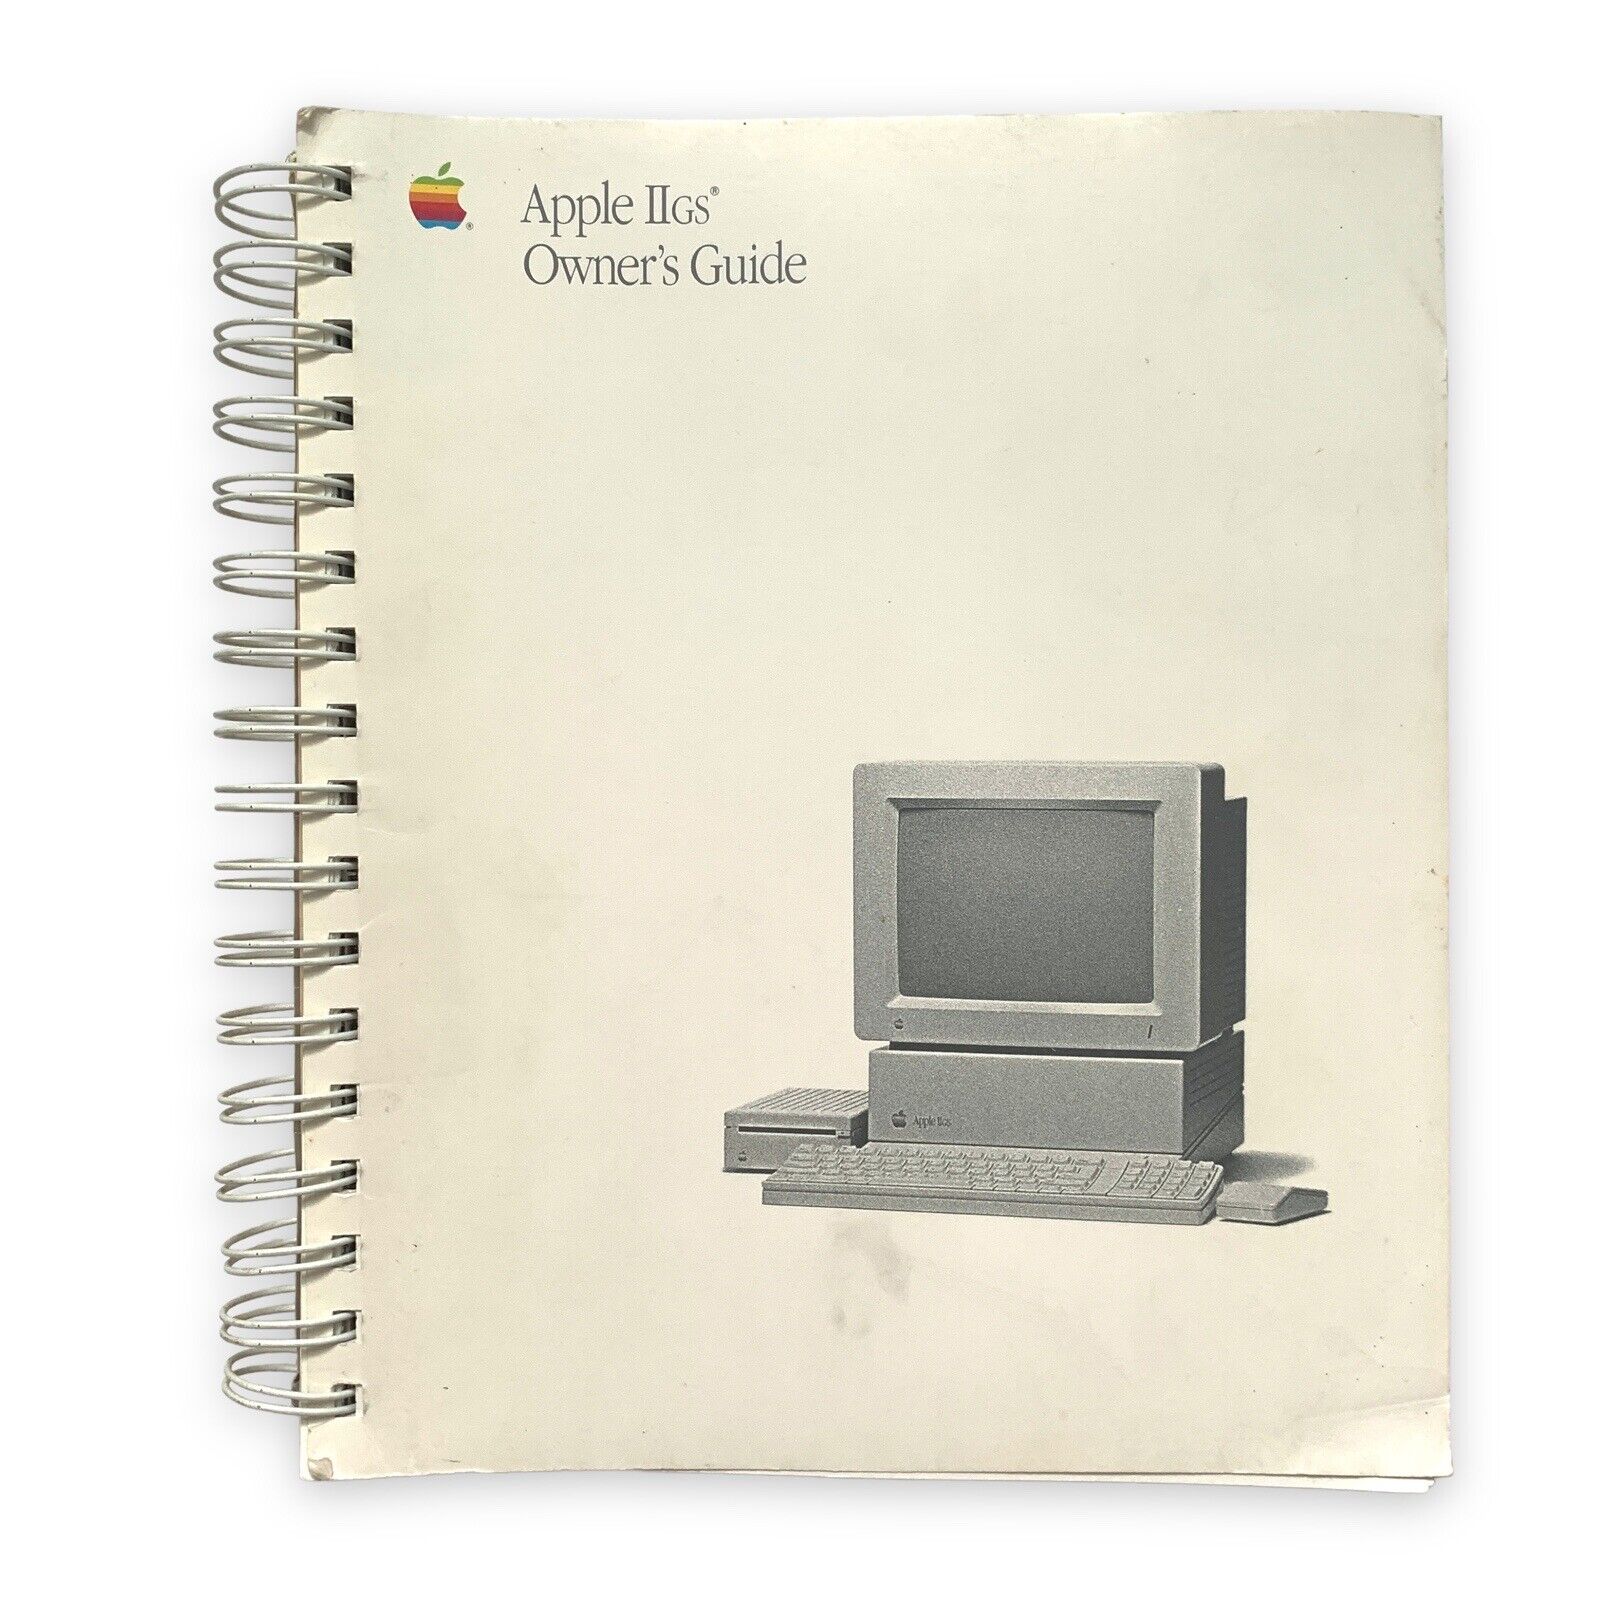 Apple IIgs Owner’s Guide Manual VTG 1988 II gs ..